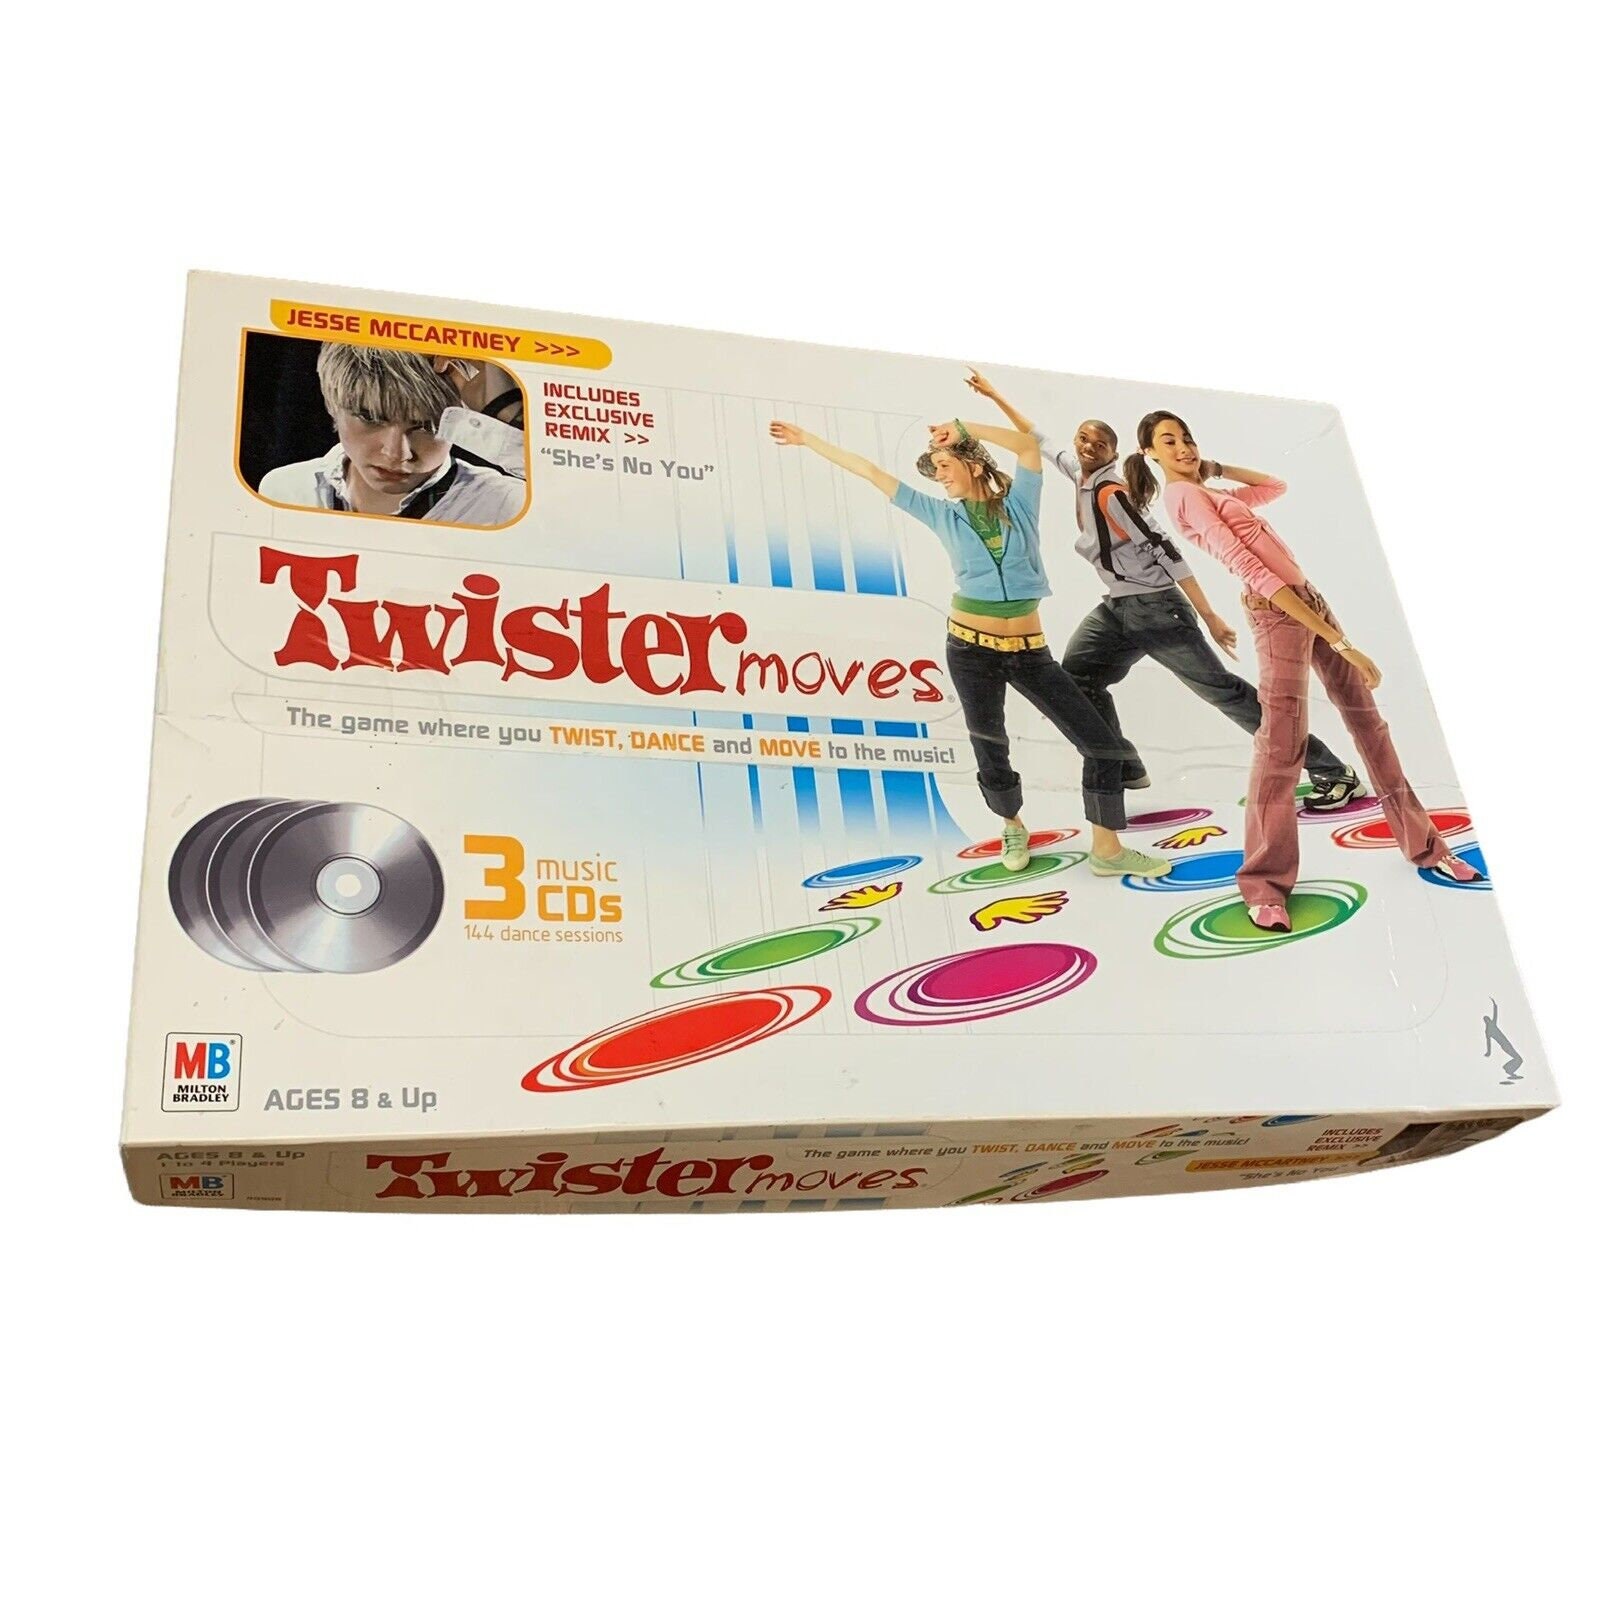 Jogo Brinquedo Twister Original Hasbro em Promoção na Americanas